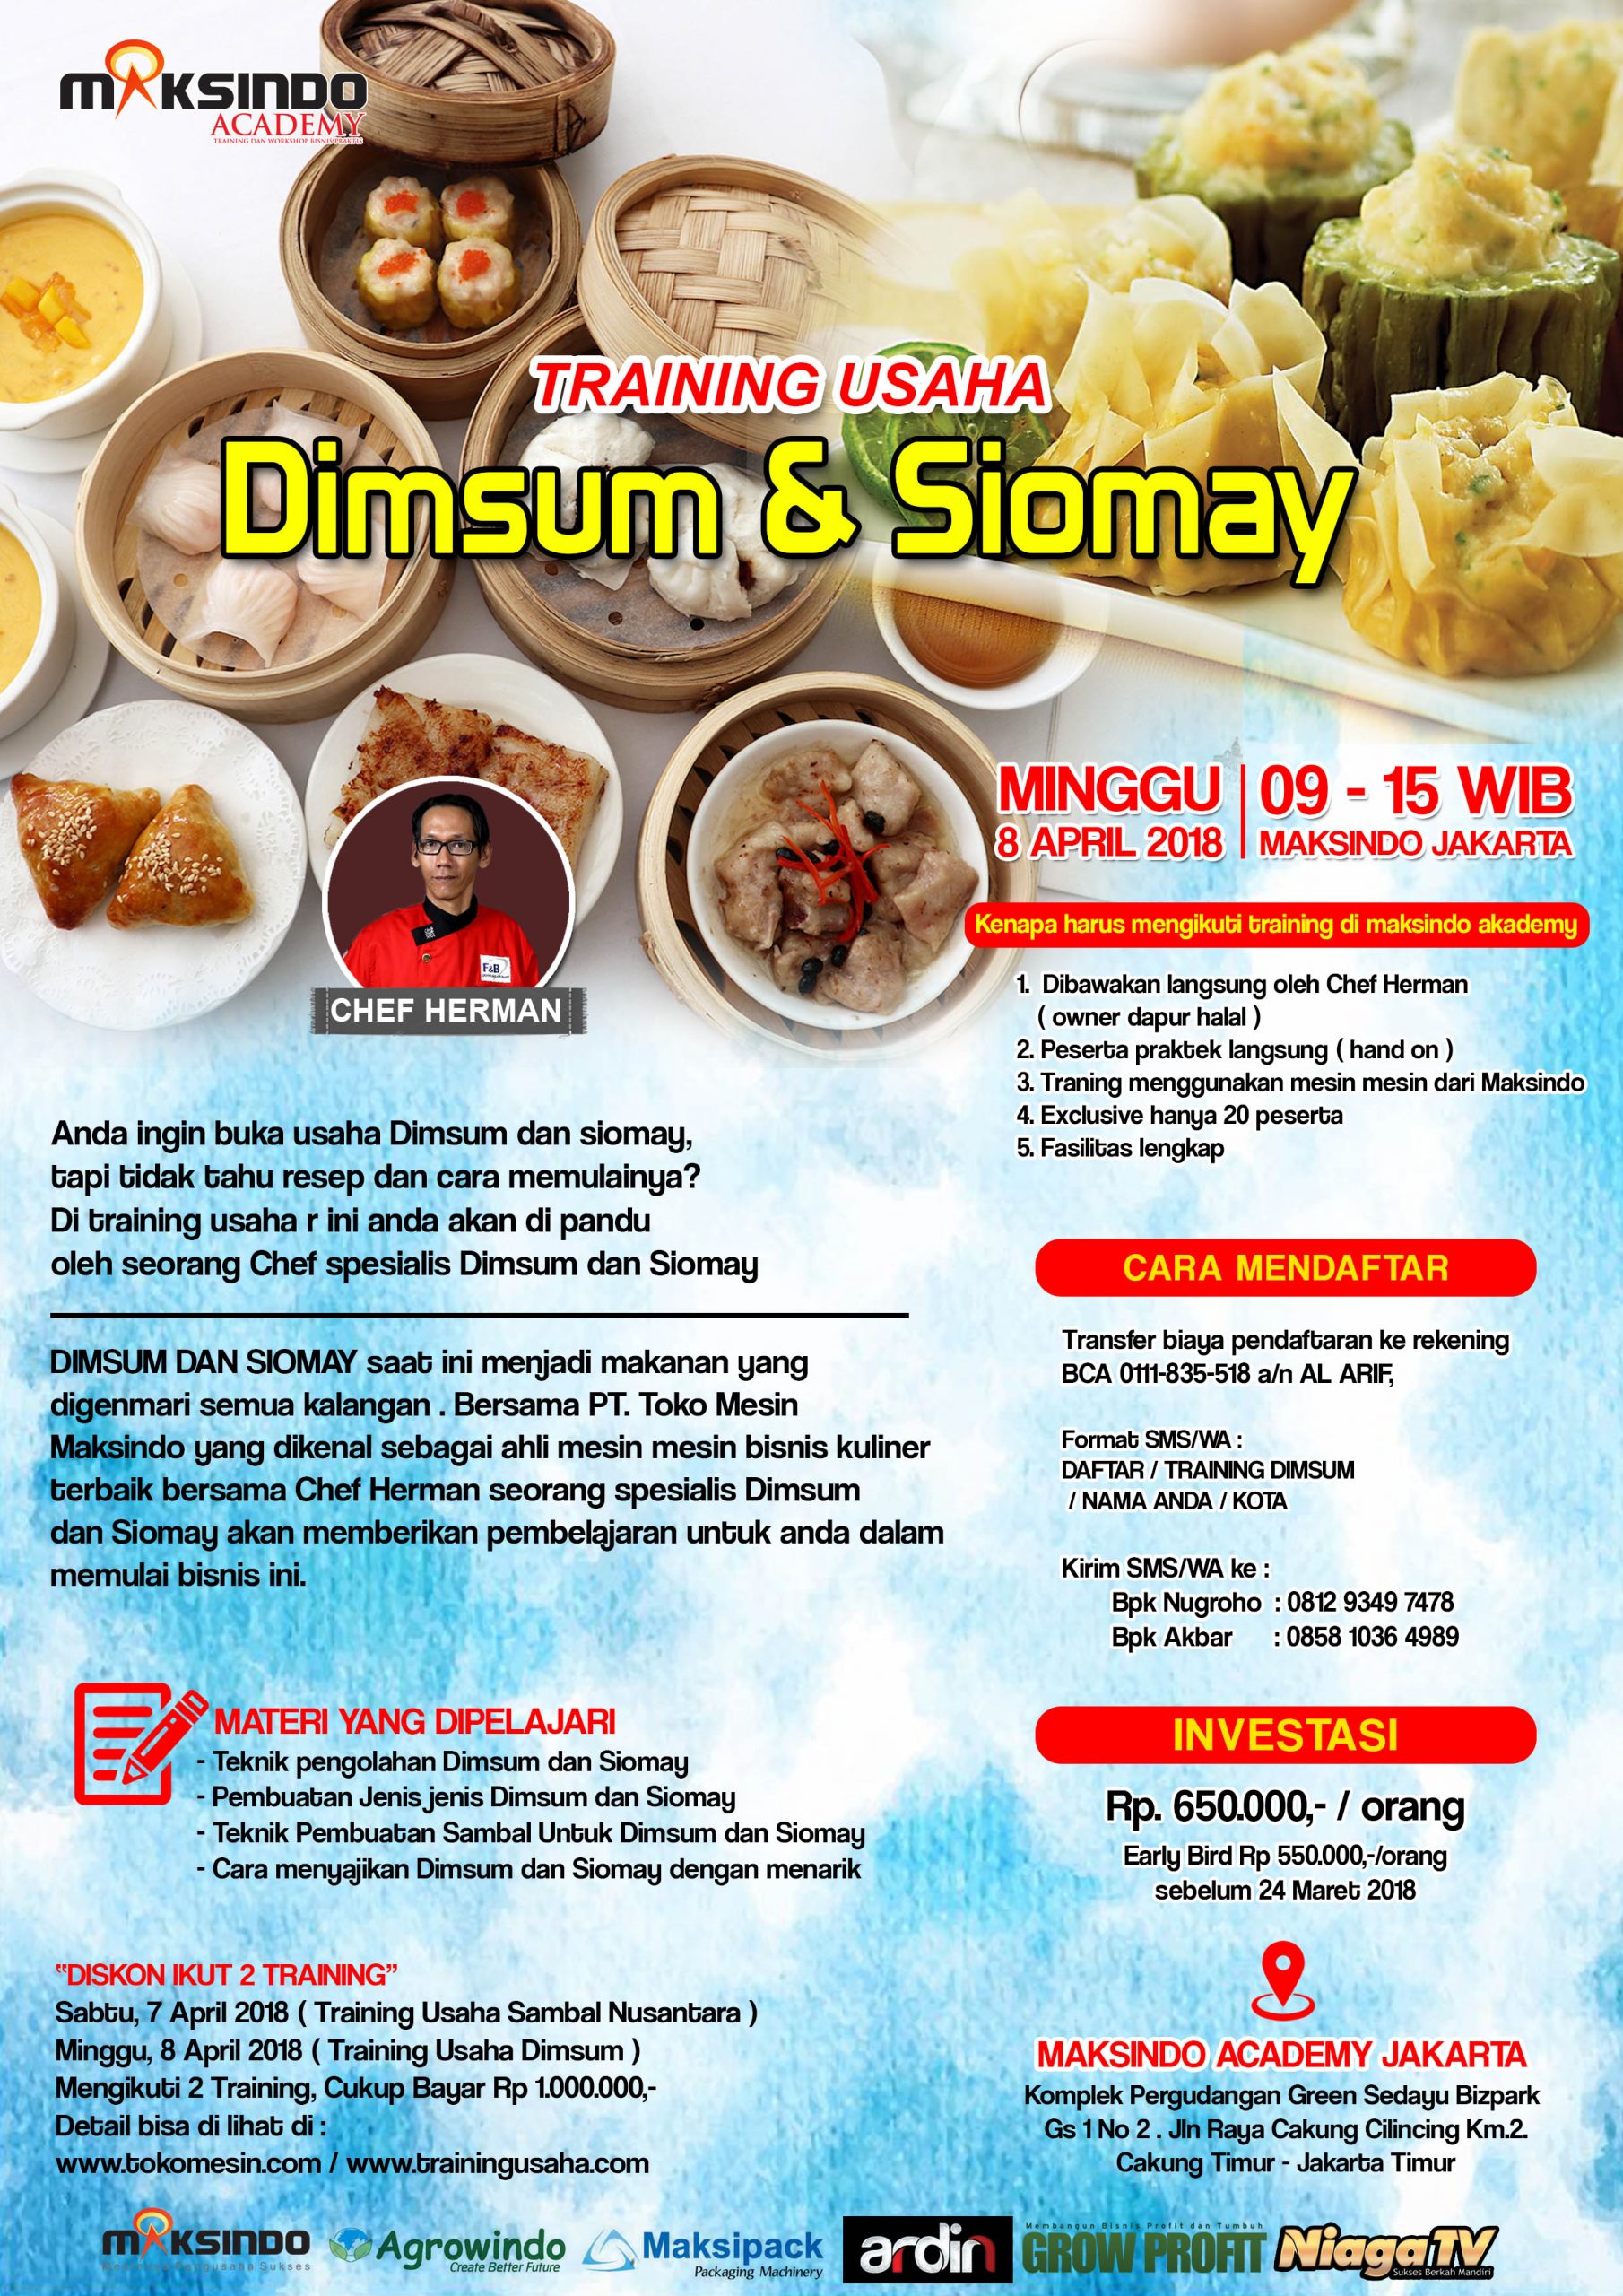 Training Usaha Dimsum & Siomay, 8 April 2018